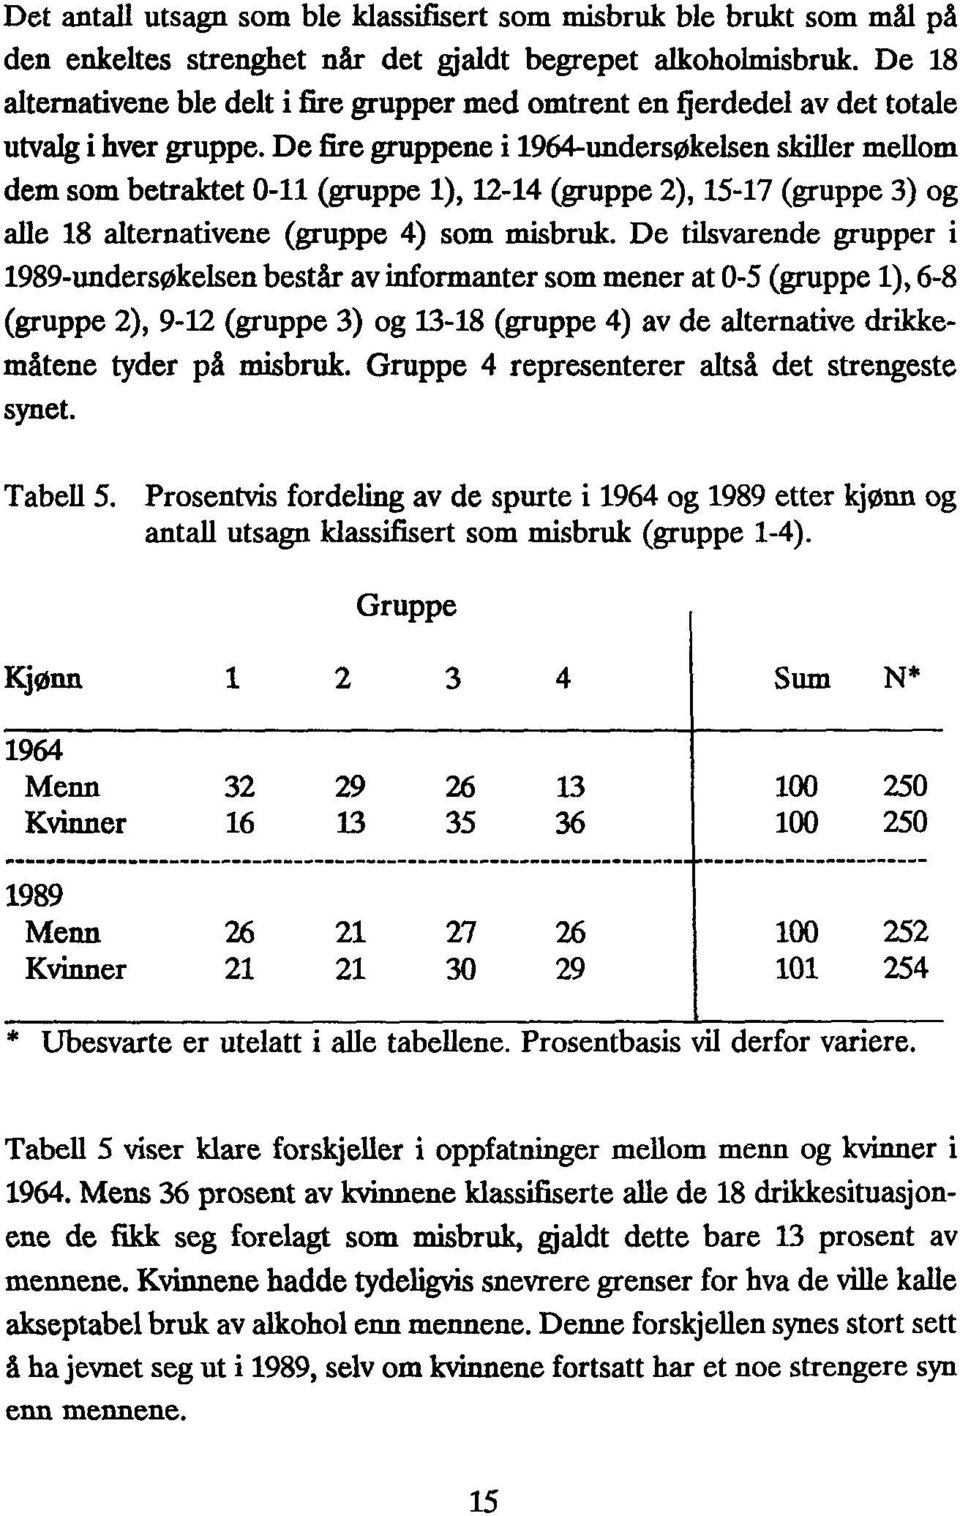 De fire gruppene i 1964-undersøkelsen skiller mellom dem som betraktet 0-11 (gruppe 1), 12-14 (gruppe 2), 15-17 (gruppe 3) og alle 18 alternativene(gruppe 4) som misbruk.